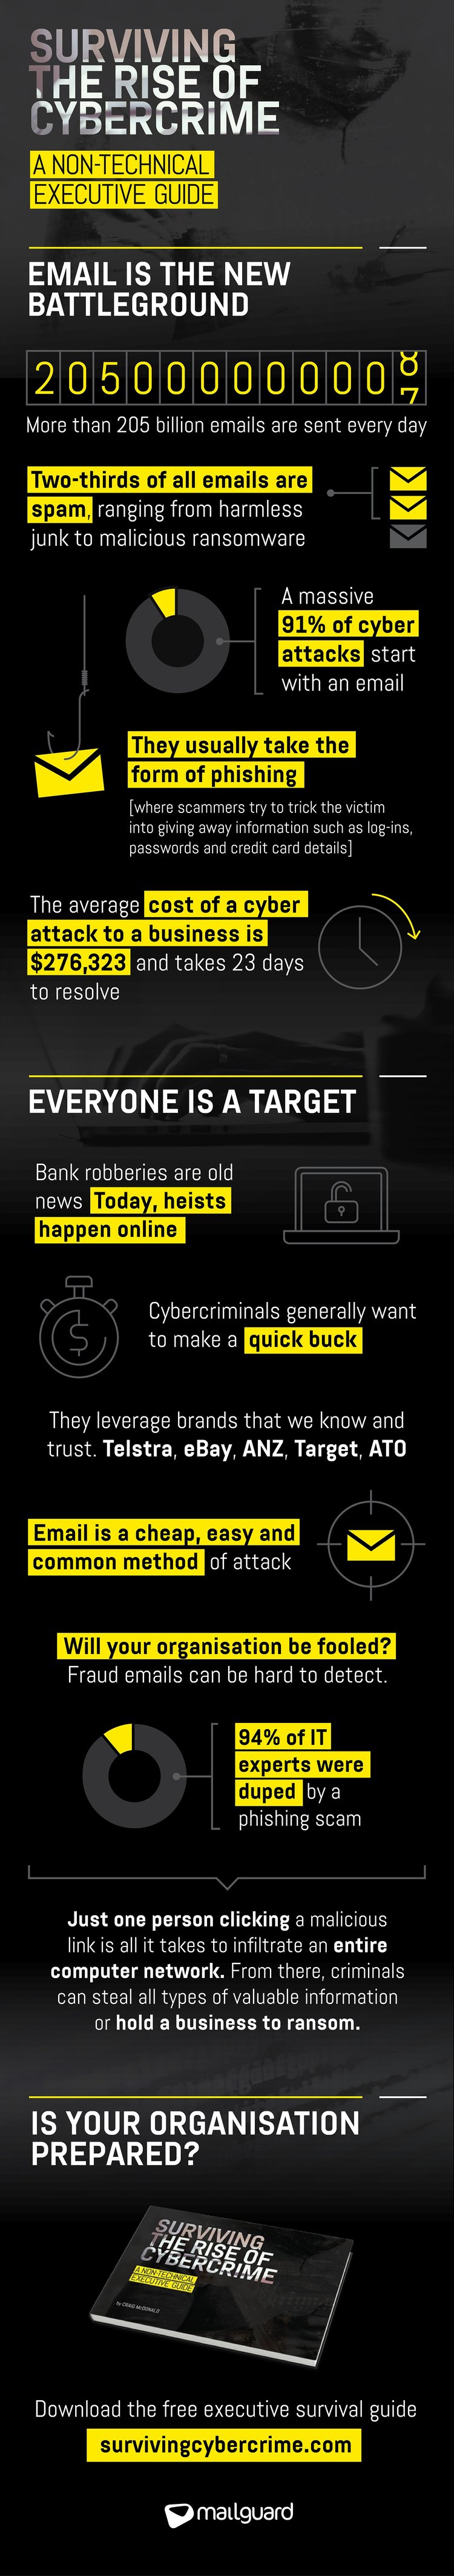 cybercrime_infographic_v5.jpg